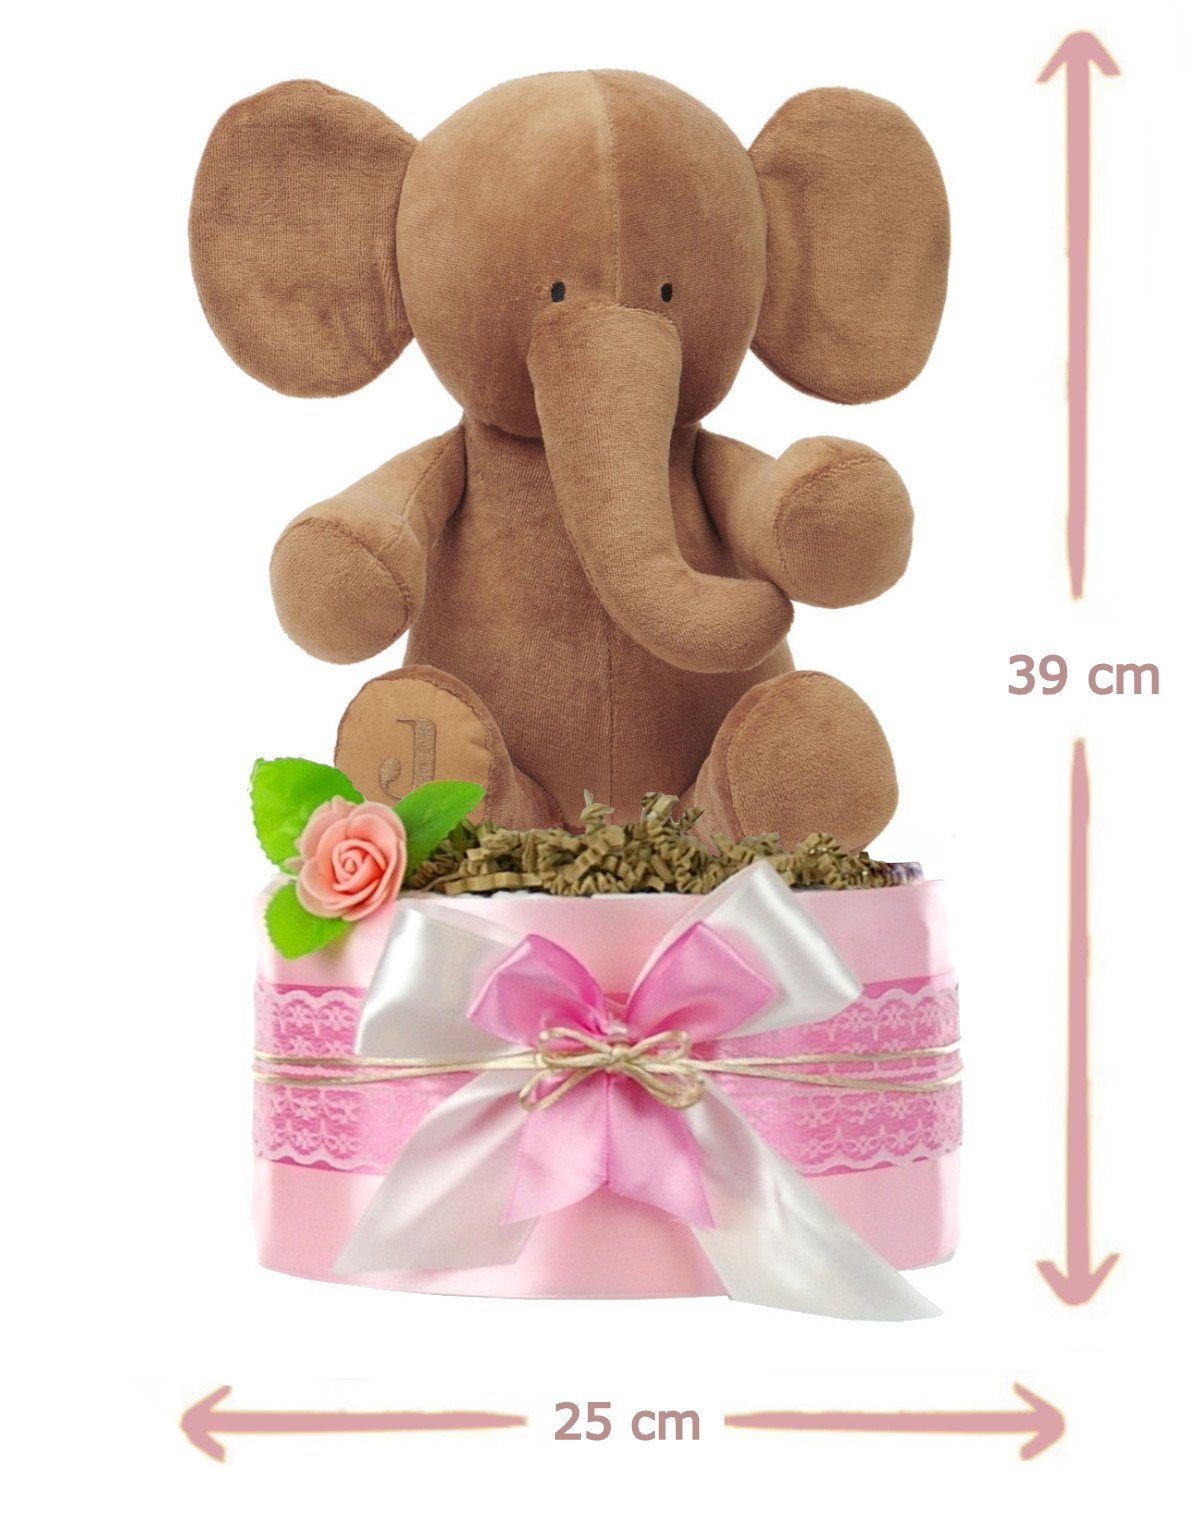 + dubistda-WINDELTORTEN- LITTLE Neugeborenen-Geschenkset Windeltorte Mädchen kuscheliger Babyparty Elefant, PEANUT